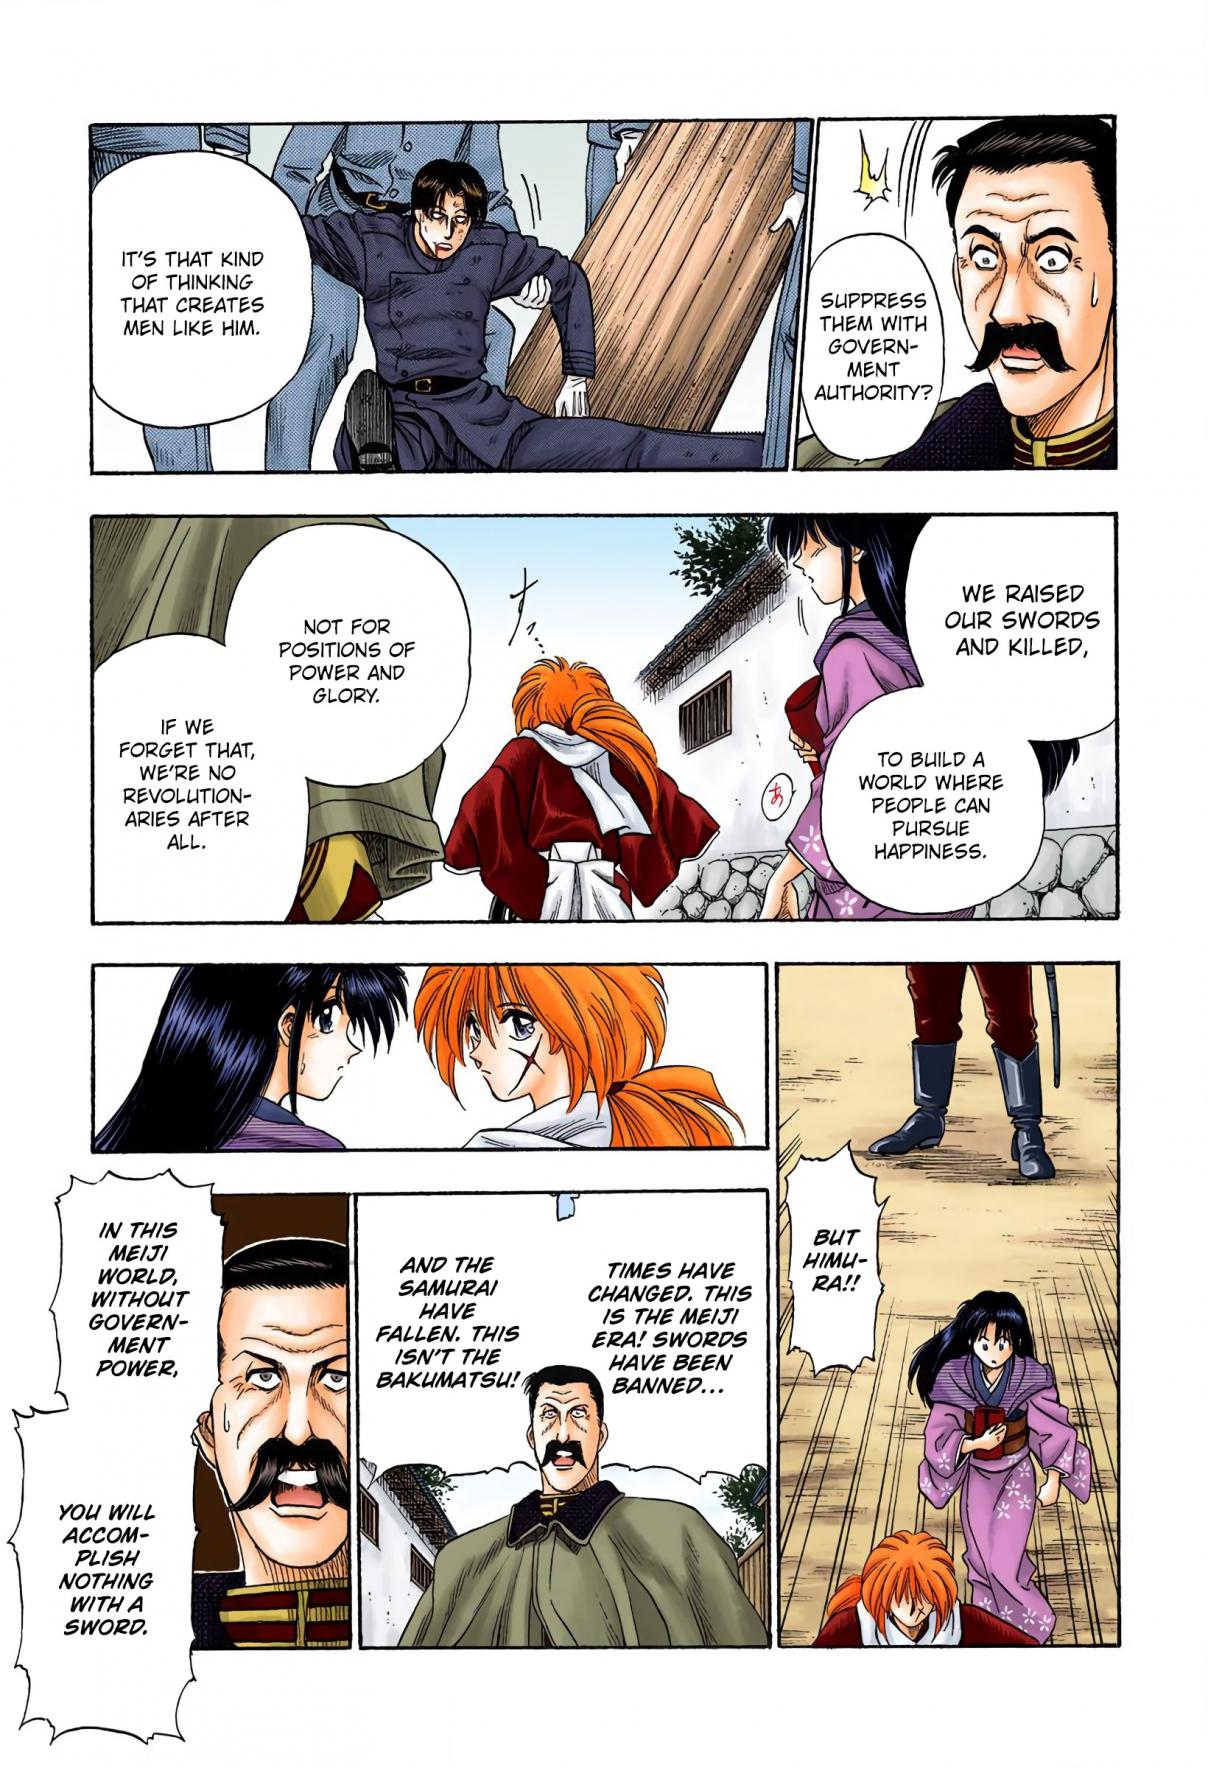 Rurouni Kenshin Digital Colored Comics Vol. 1 Ch. 2 Rurouni in the City